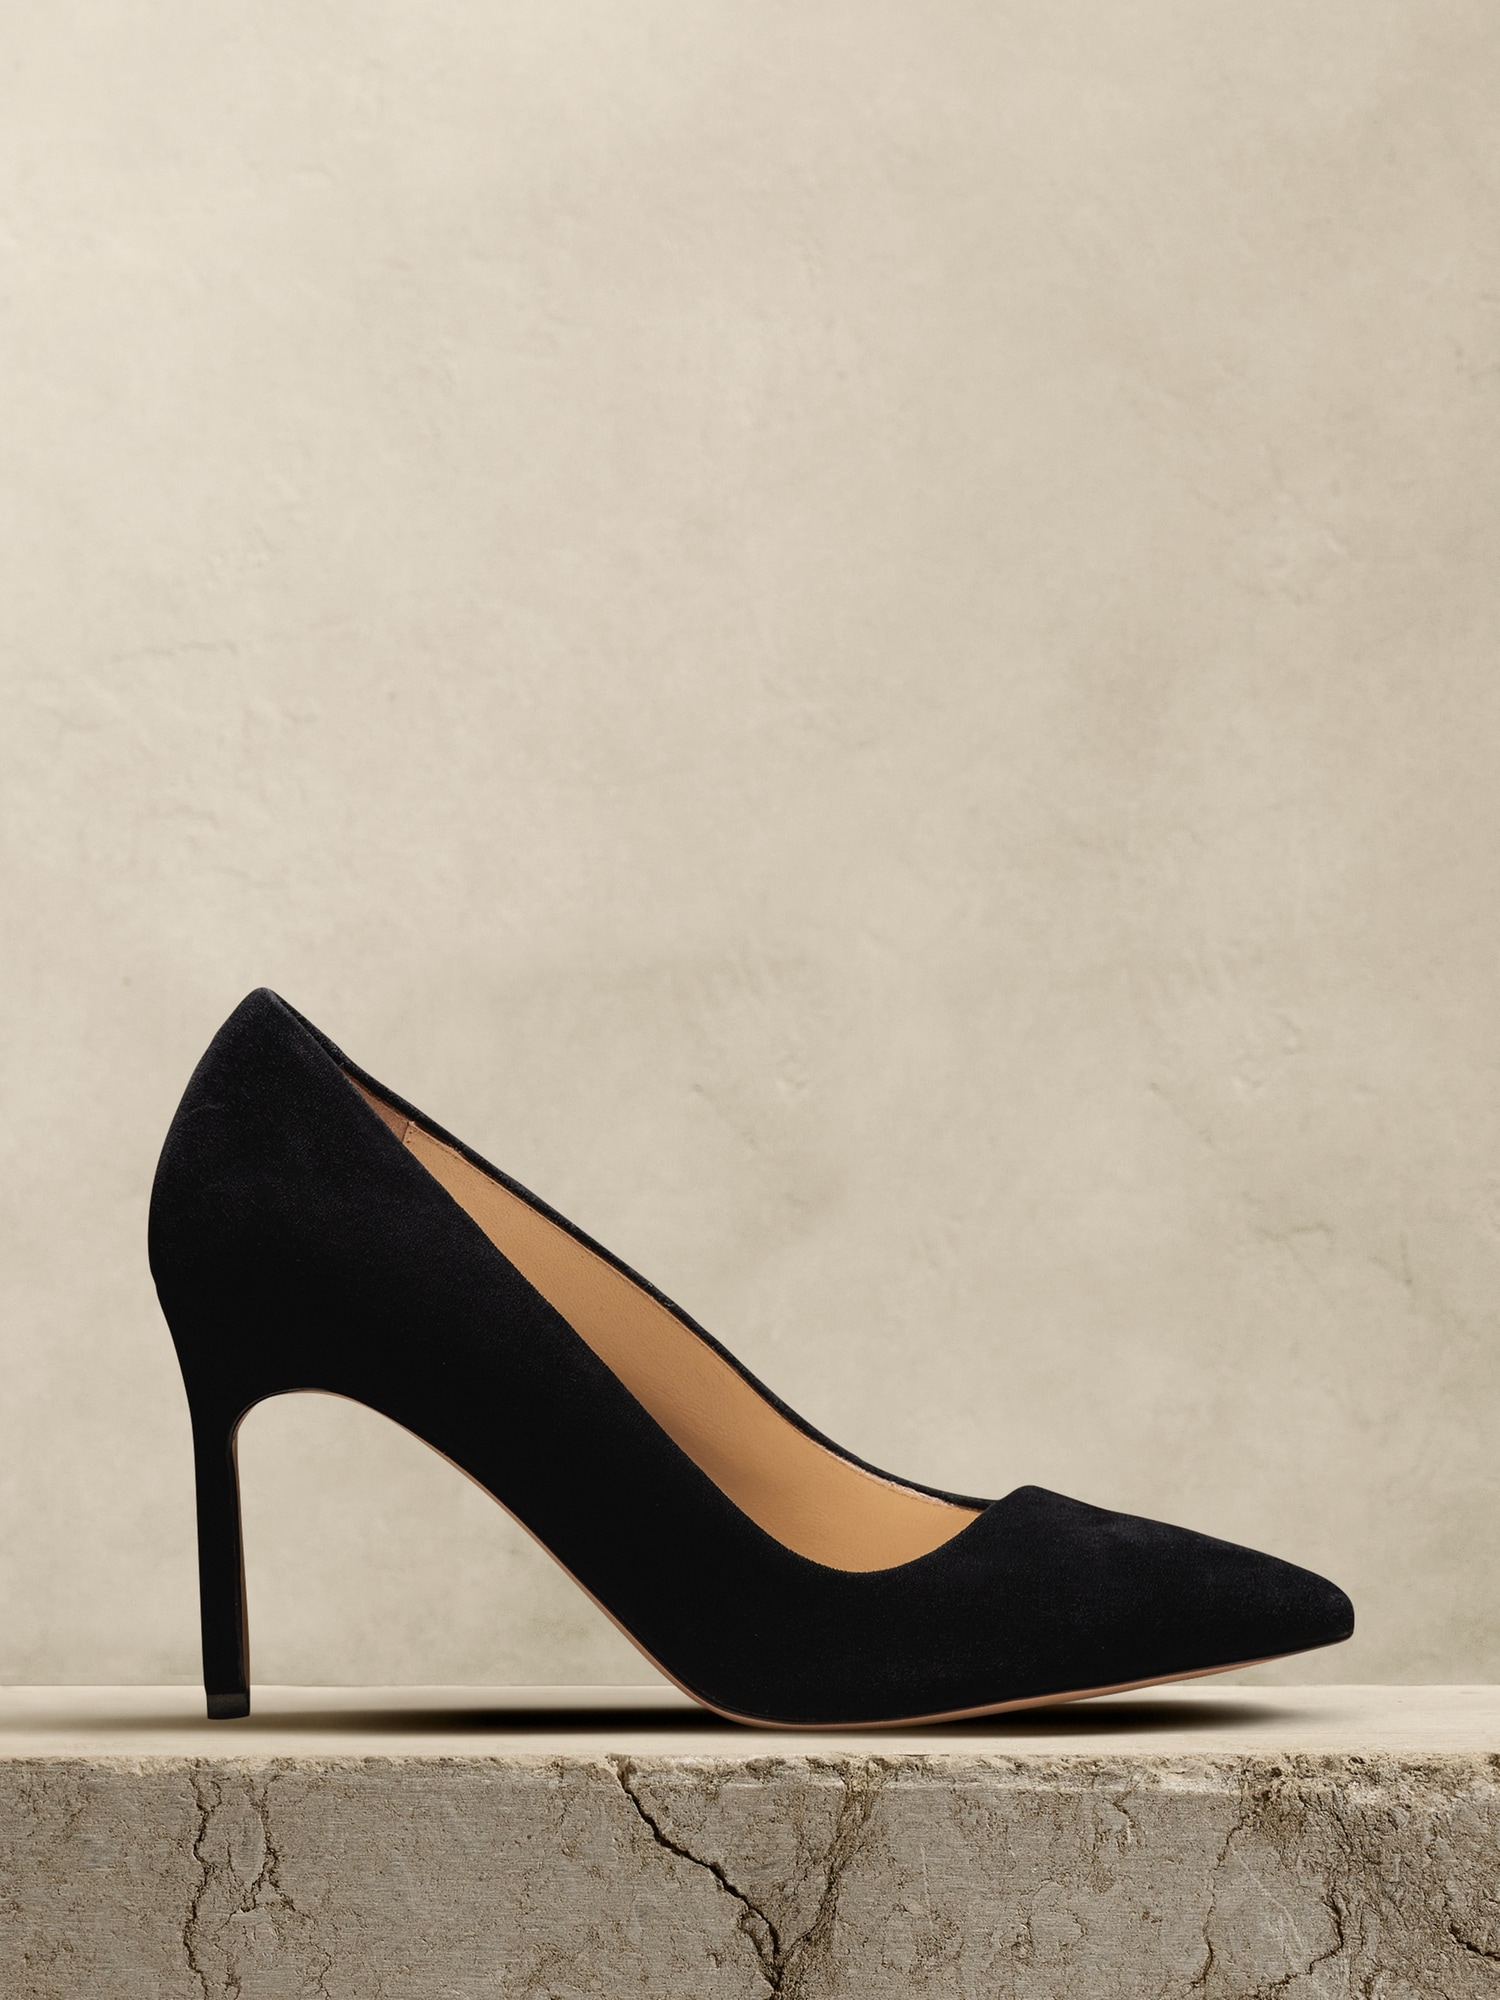 Banana Republic black suede heels | Black suede heels, Suede heels, Heels